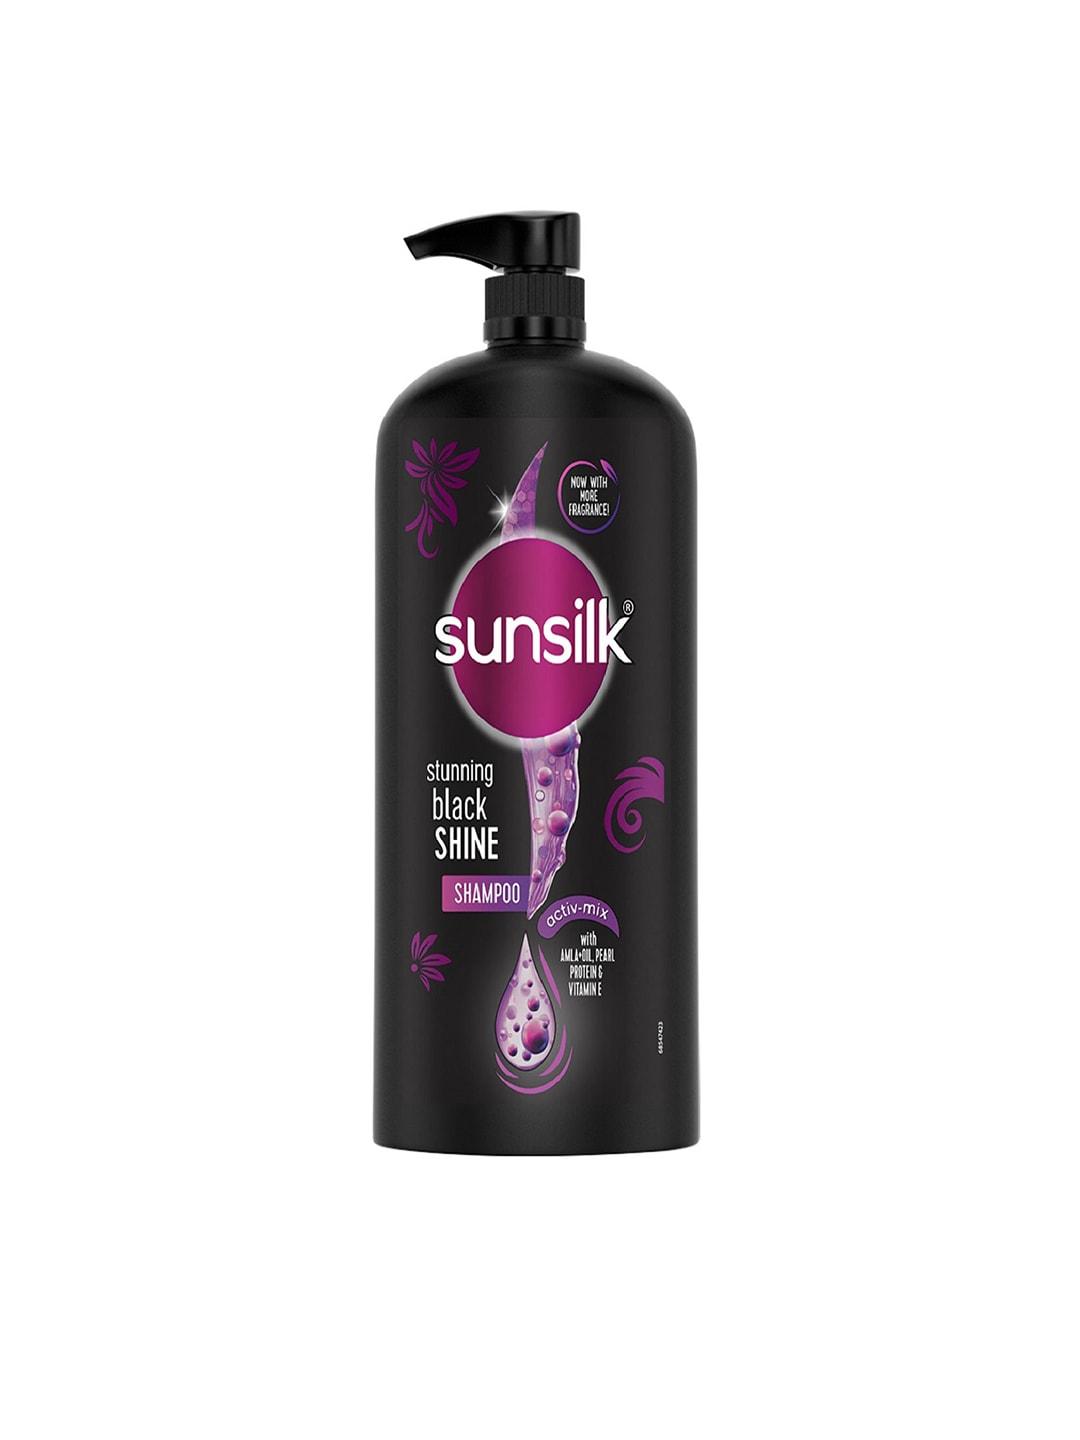 Sunsilk Stunning Black Shine Shampoo, With Amla+Oil, Pearl Protein & Vitamin E 1L